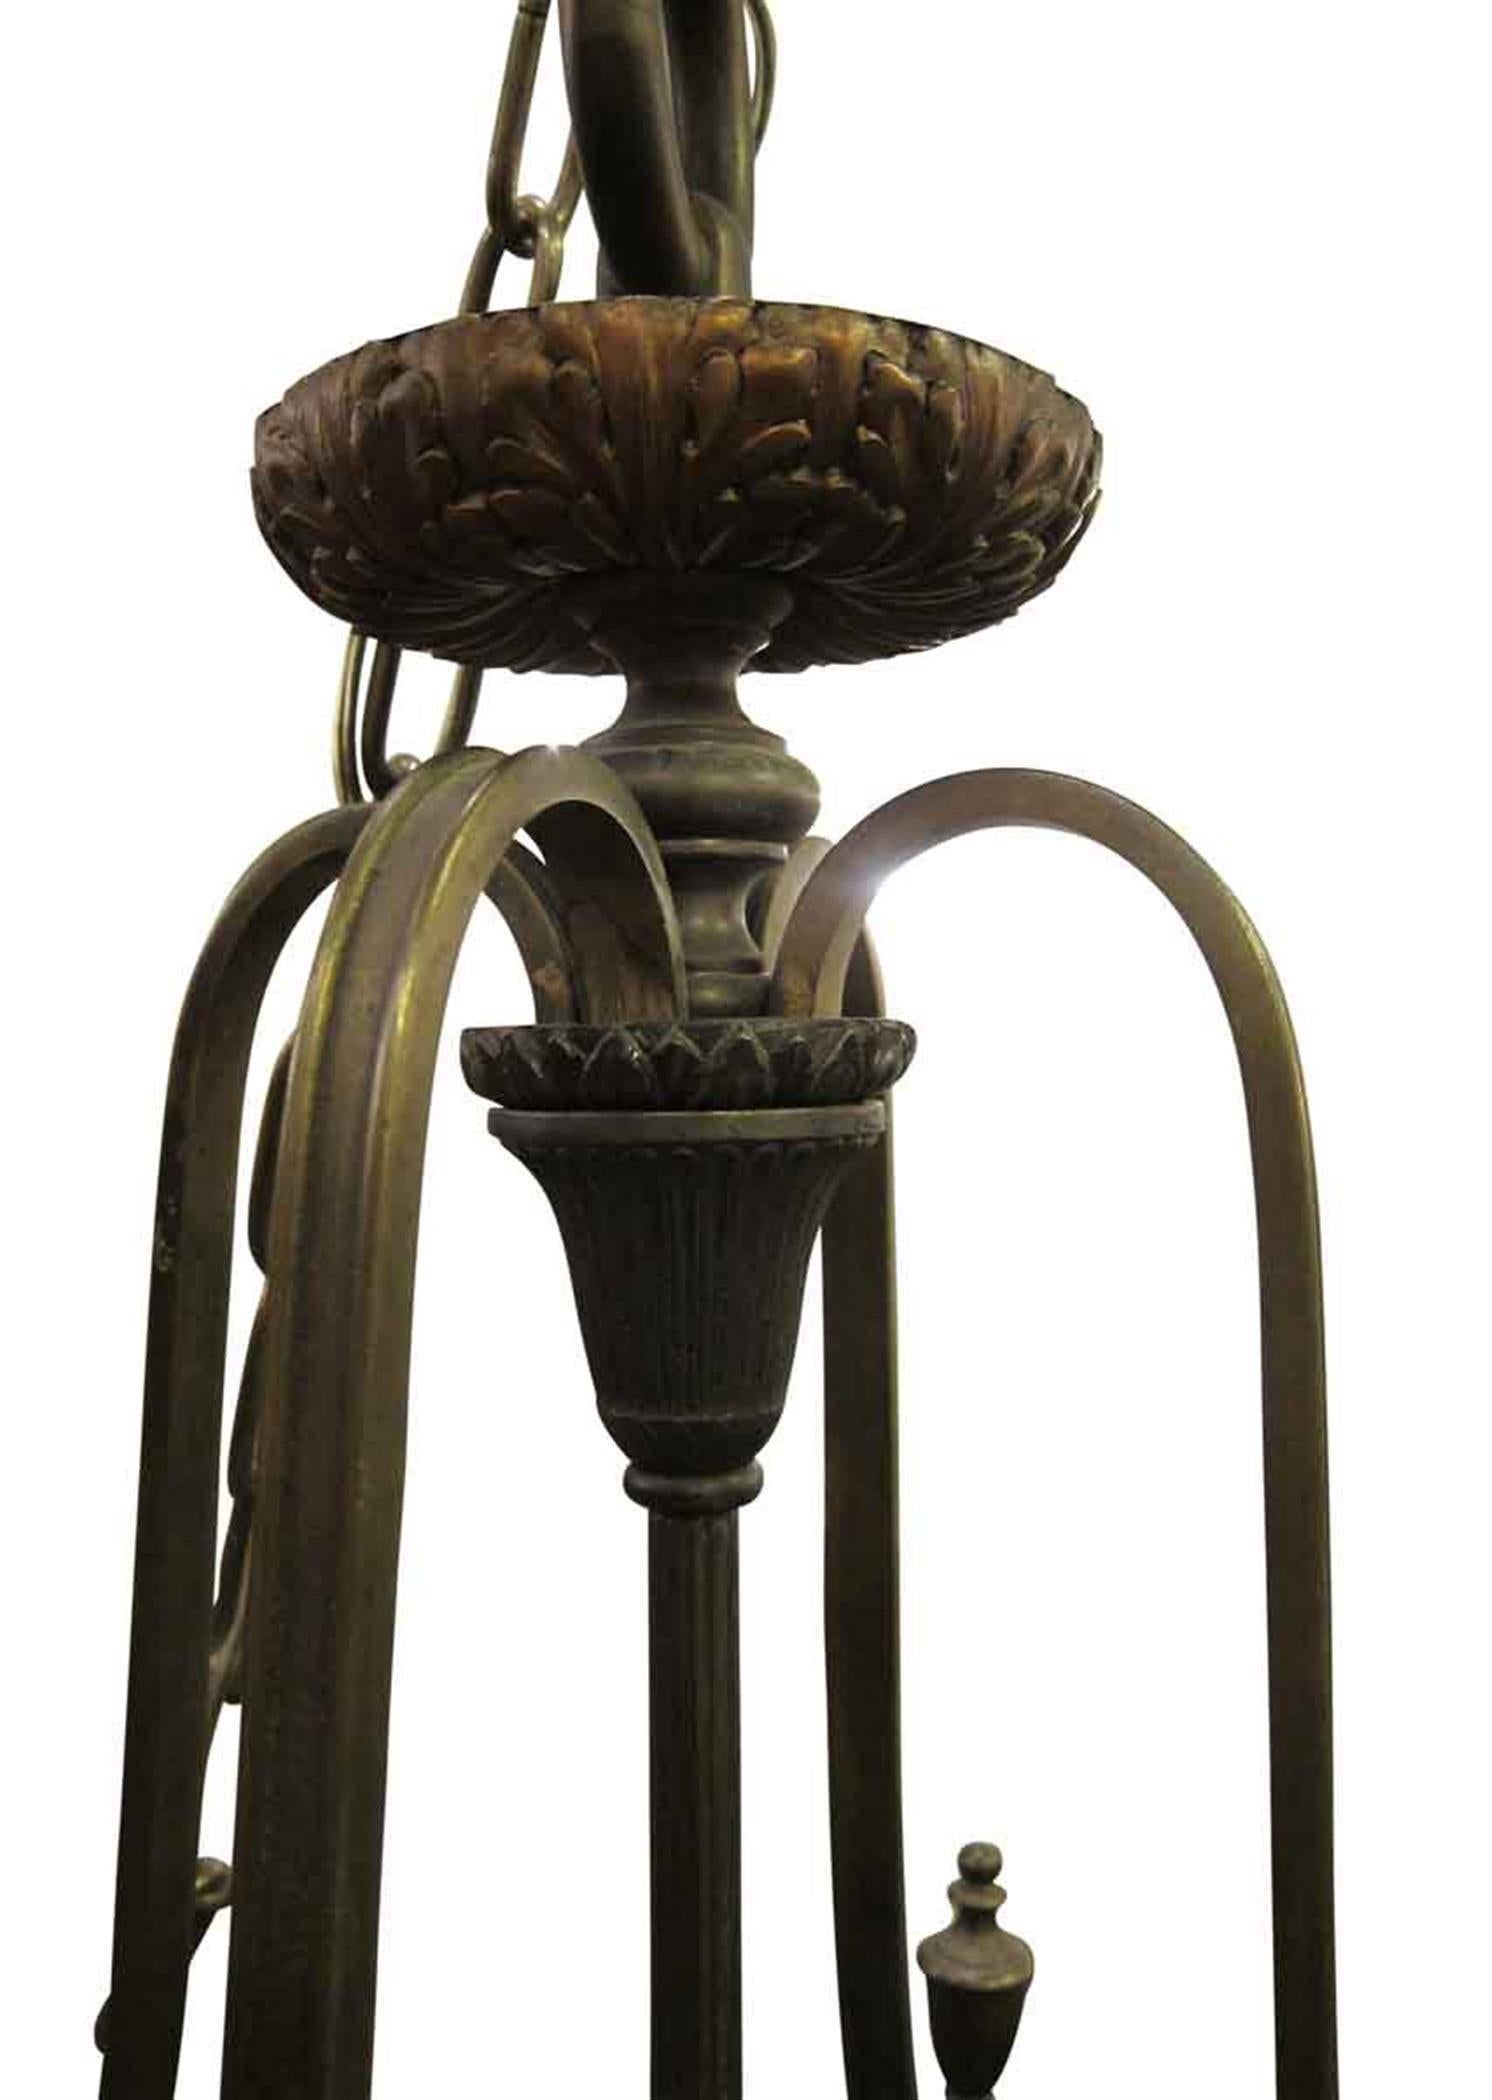 Fabriqué par EF Caldwell, New York, vers 1910. Cette lanterne à six lumières présente des clés grecques finement détaillées sur le bandeau supérieur et des fleurons en forme d'ananas sur la partie inférieure. Veuillez noter que cet article se trouve